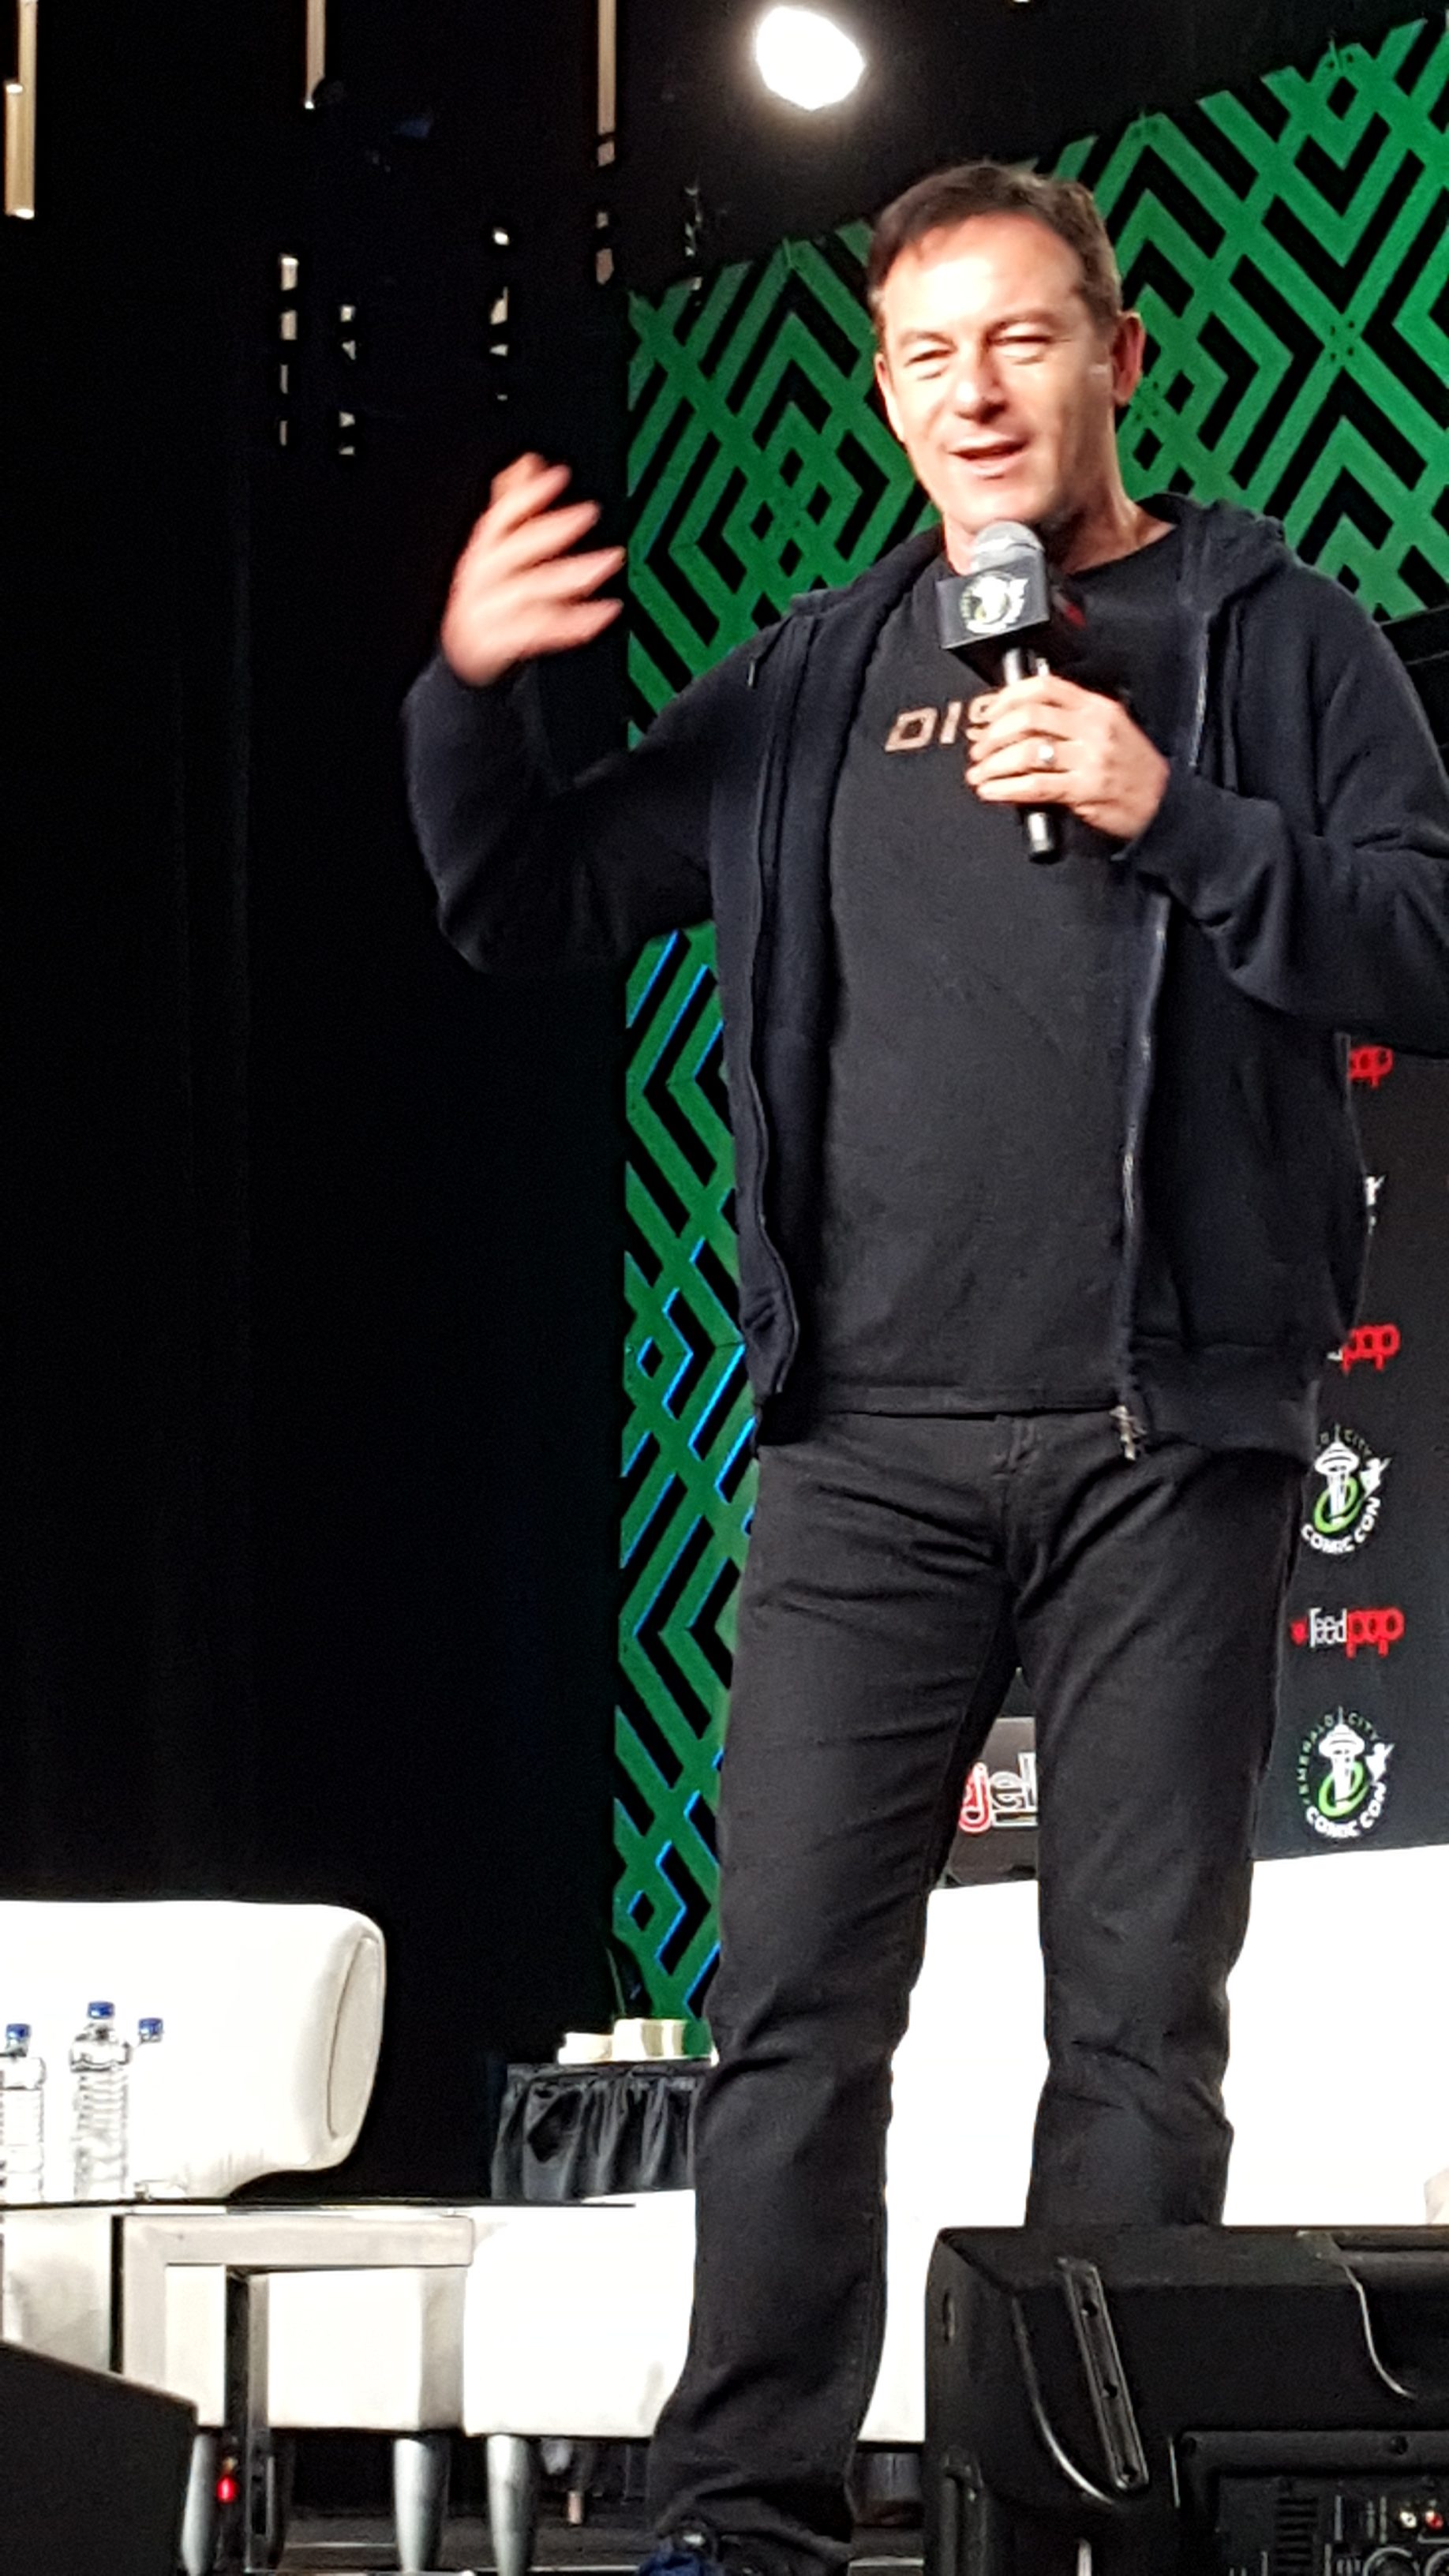 Jason Isaacs at his spotlight panel at Emerald City Comic Con